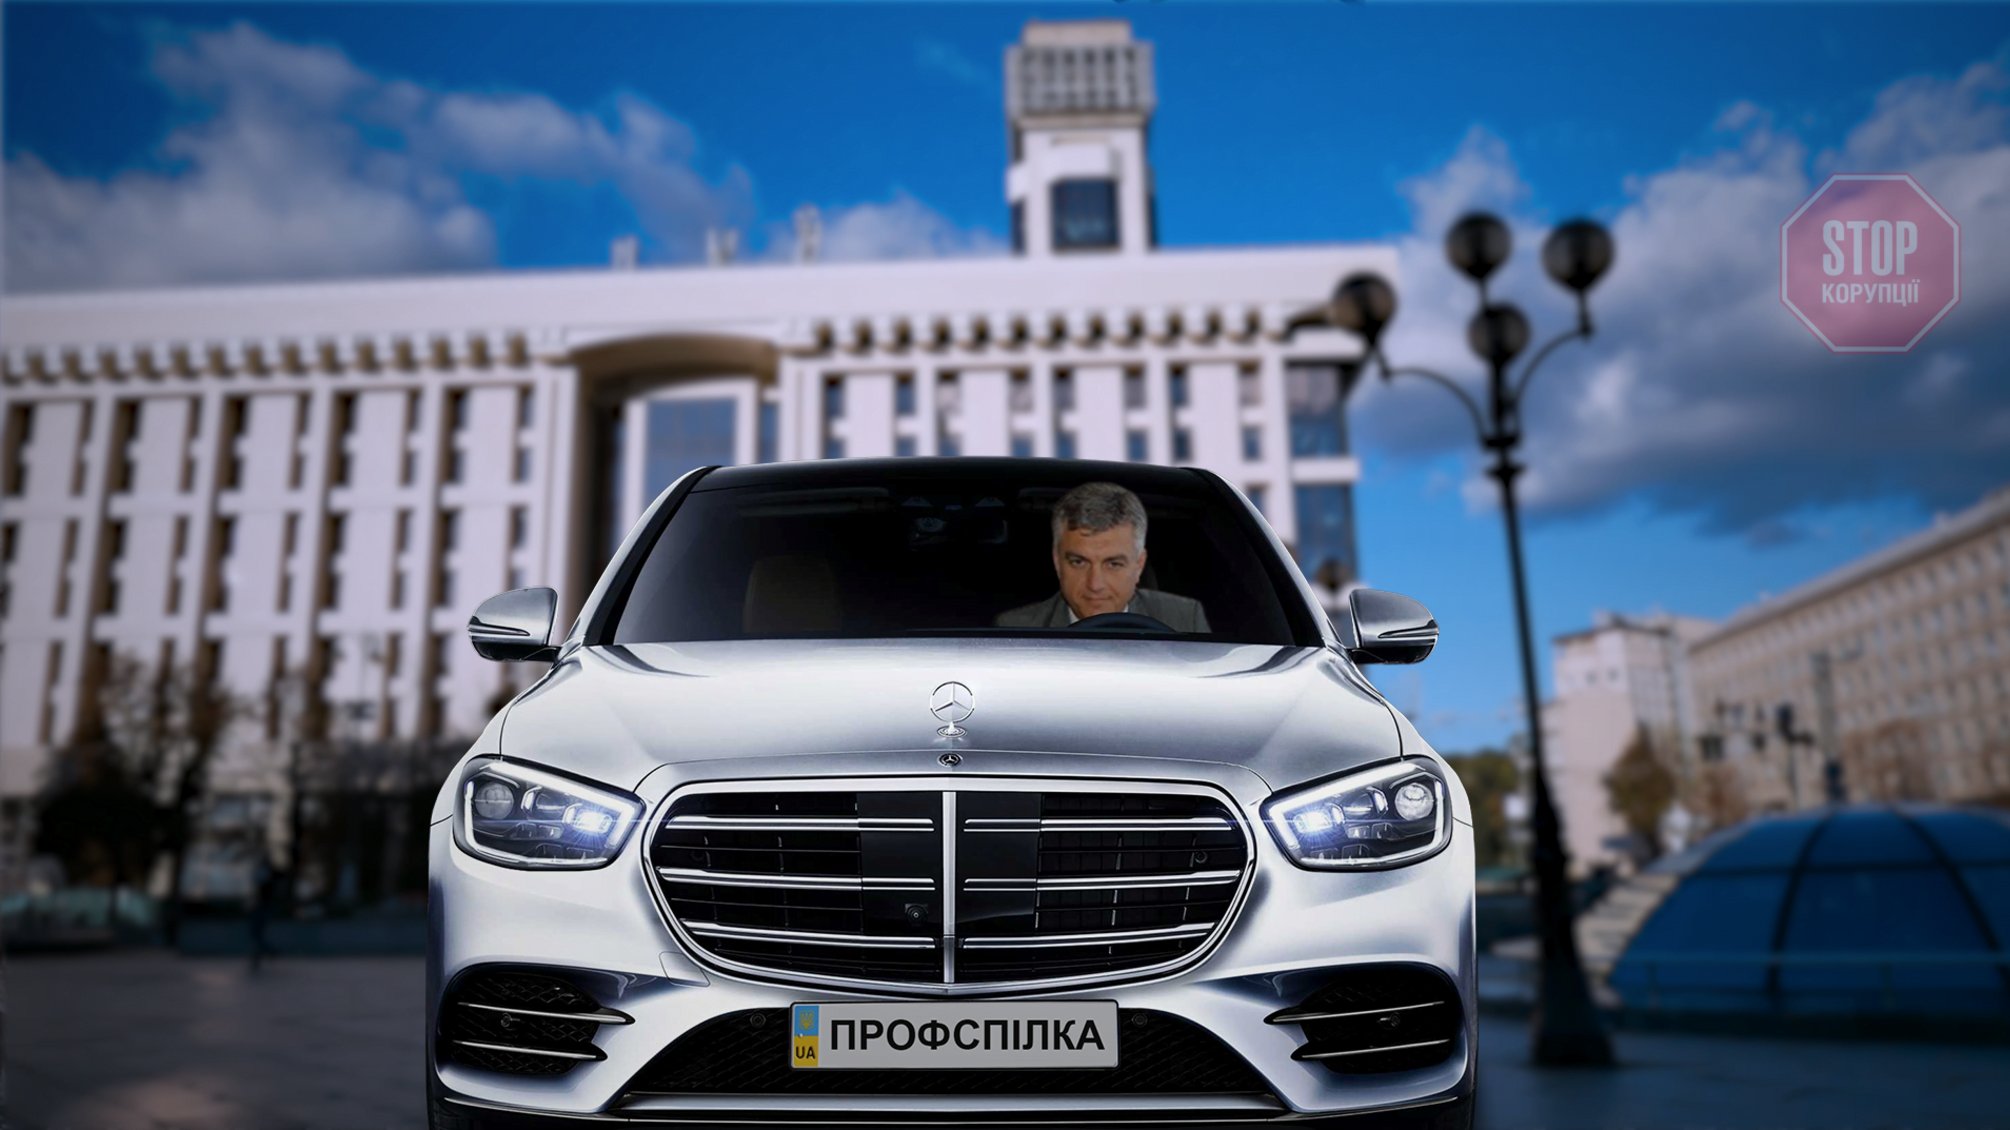 Очільник профспілки держустанов України придбав представницьке авто за понад мільйон гривень